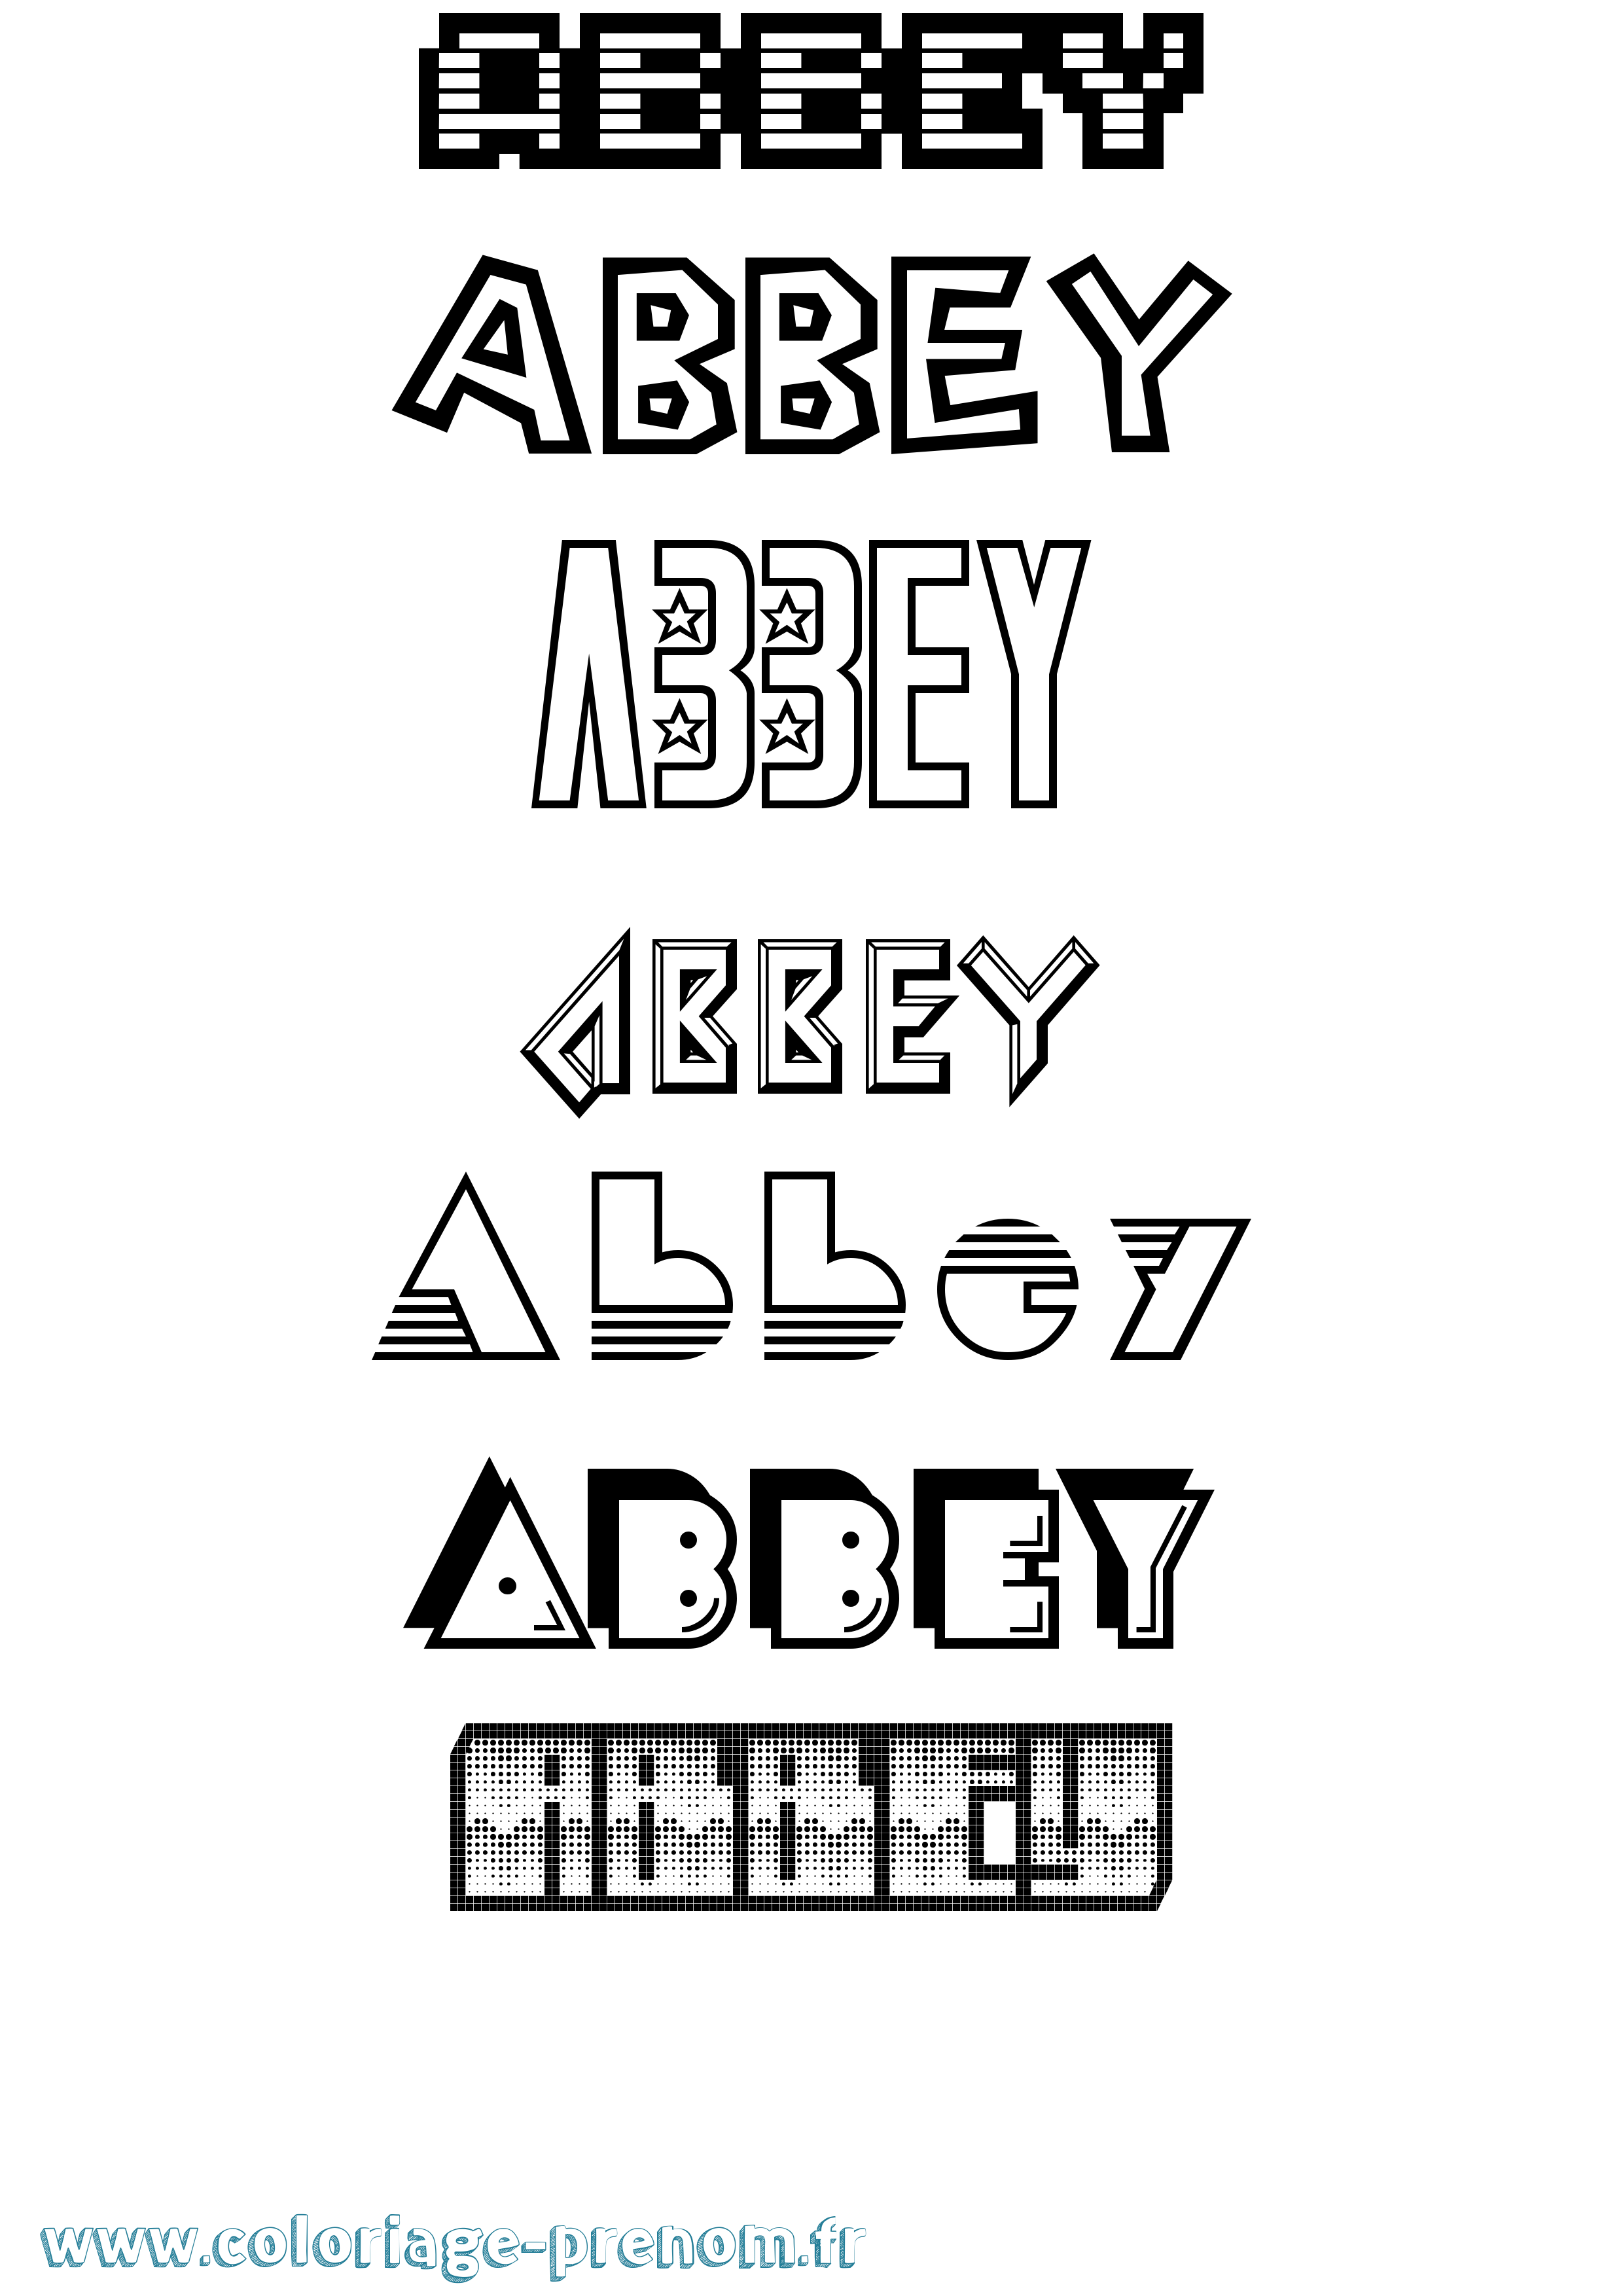 Coloriage prénom Abbey Jeux Vidéos